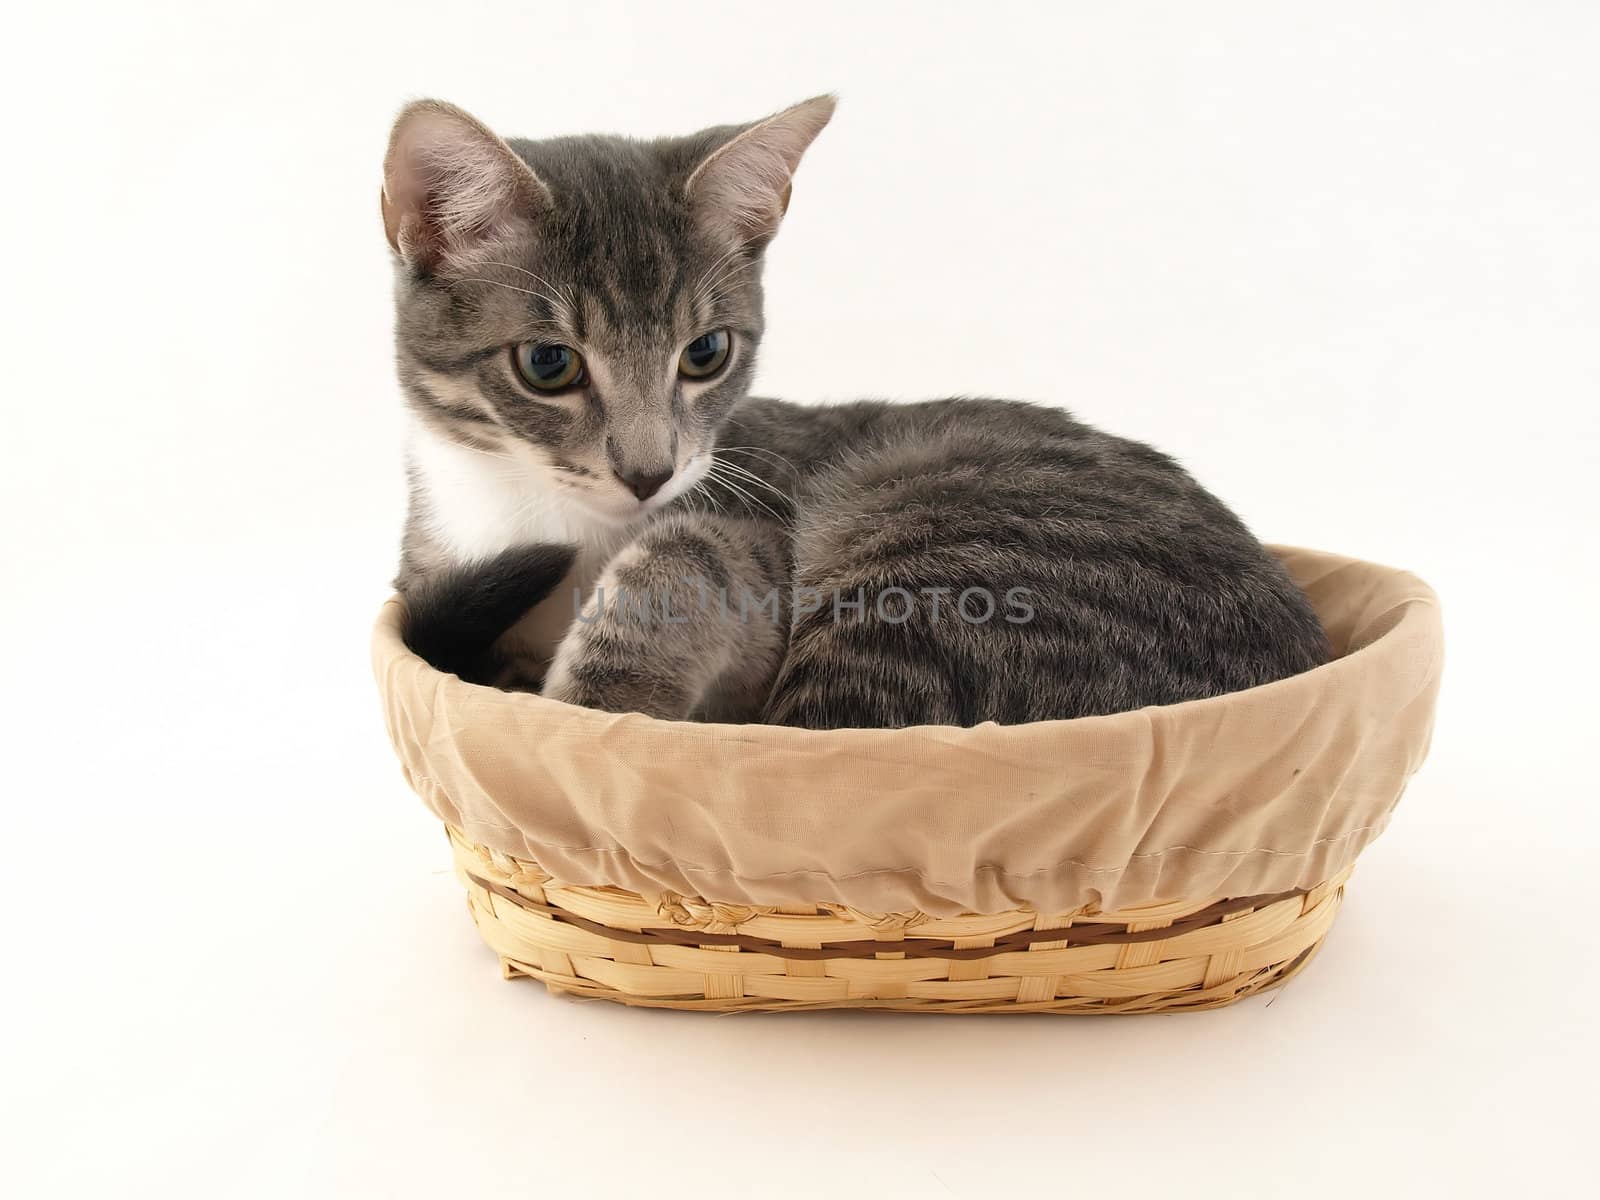 Gray Kitten in a Basket by RGebbiePhoto